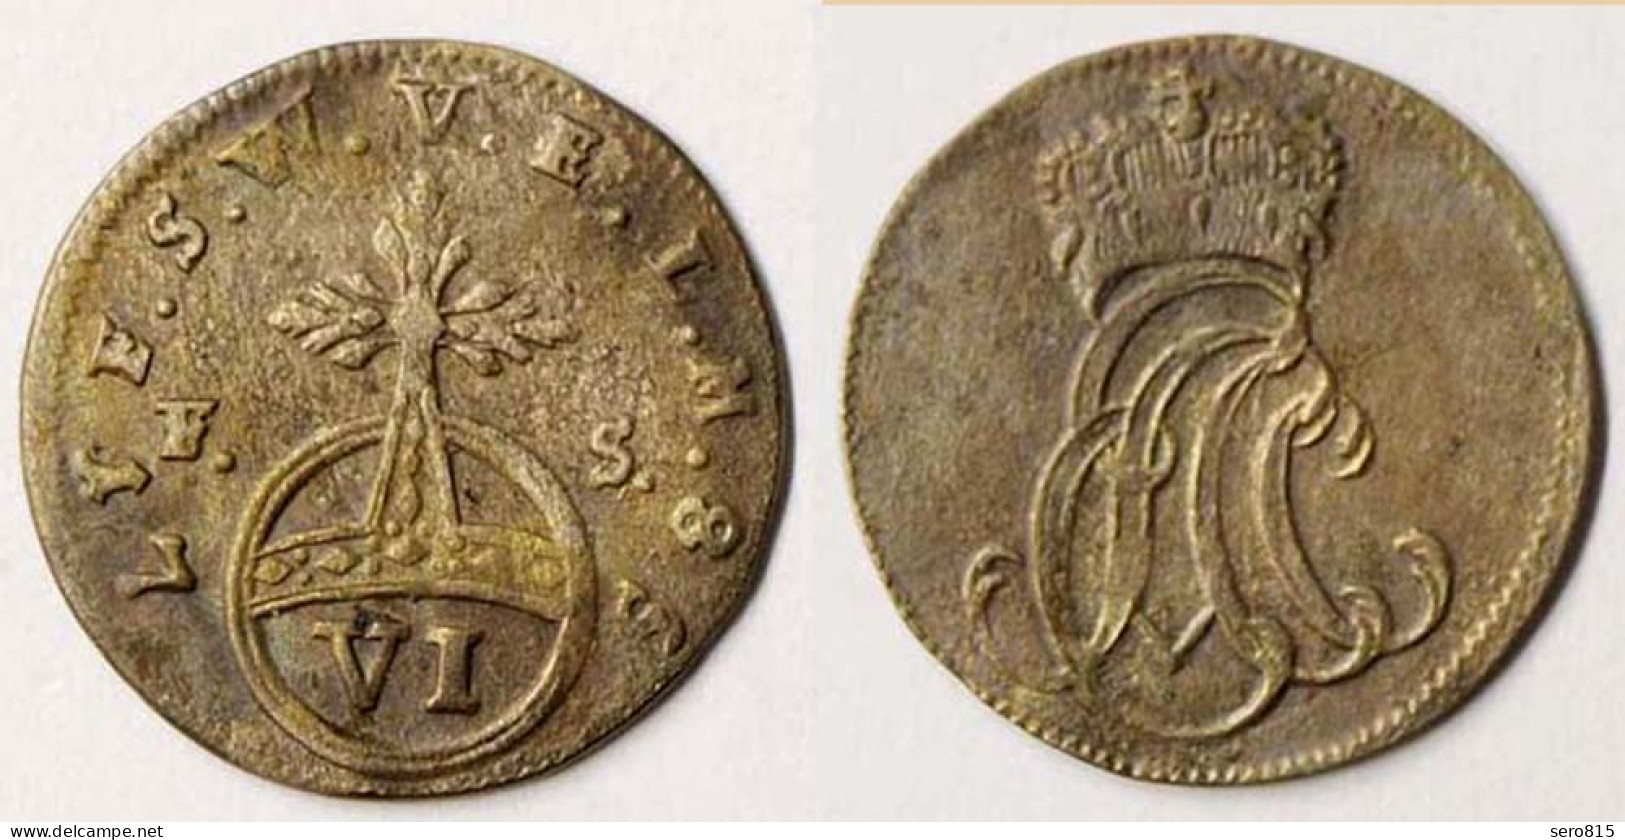 Sachsen-Weimar-Eisenach 6 Pfennig 1758 Altdeutschland OLD German States (n598 - Small Coins & Other Subdivisions